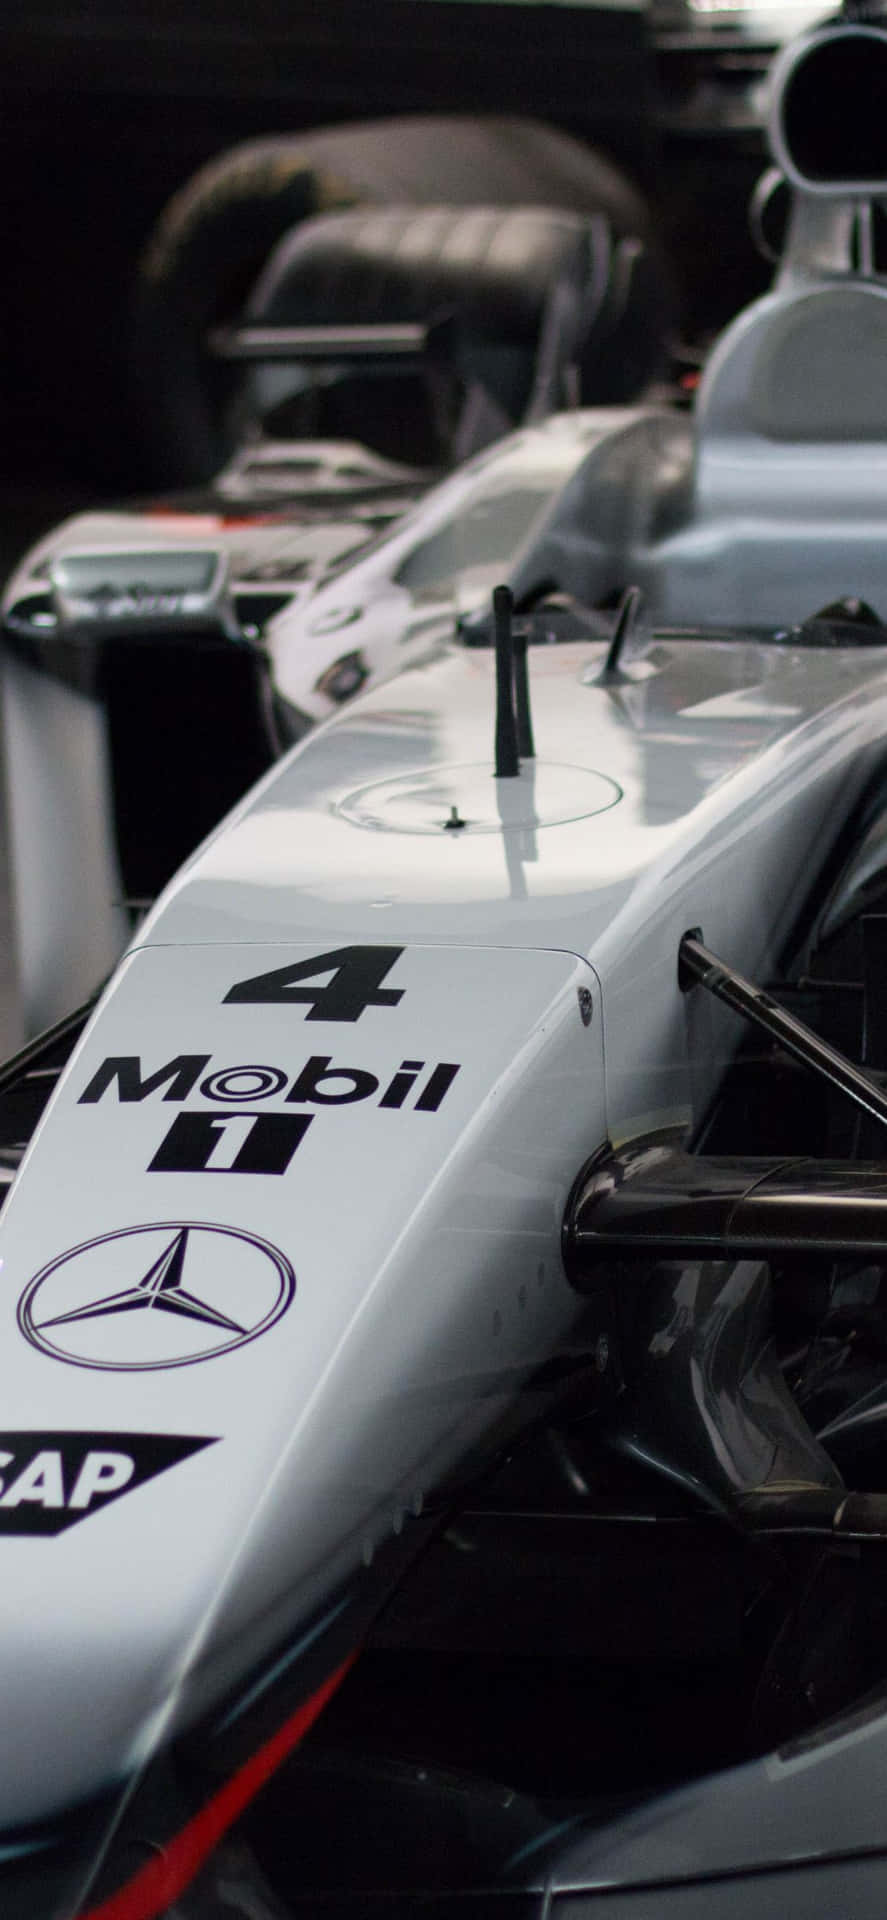 A Close Up Of A Mercedes F1 Car Wallpaper